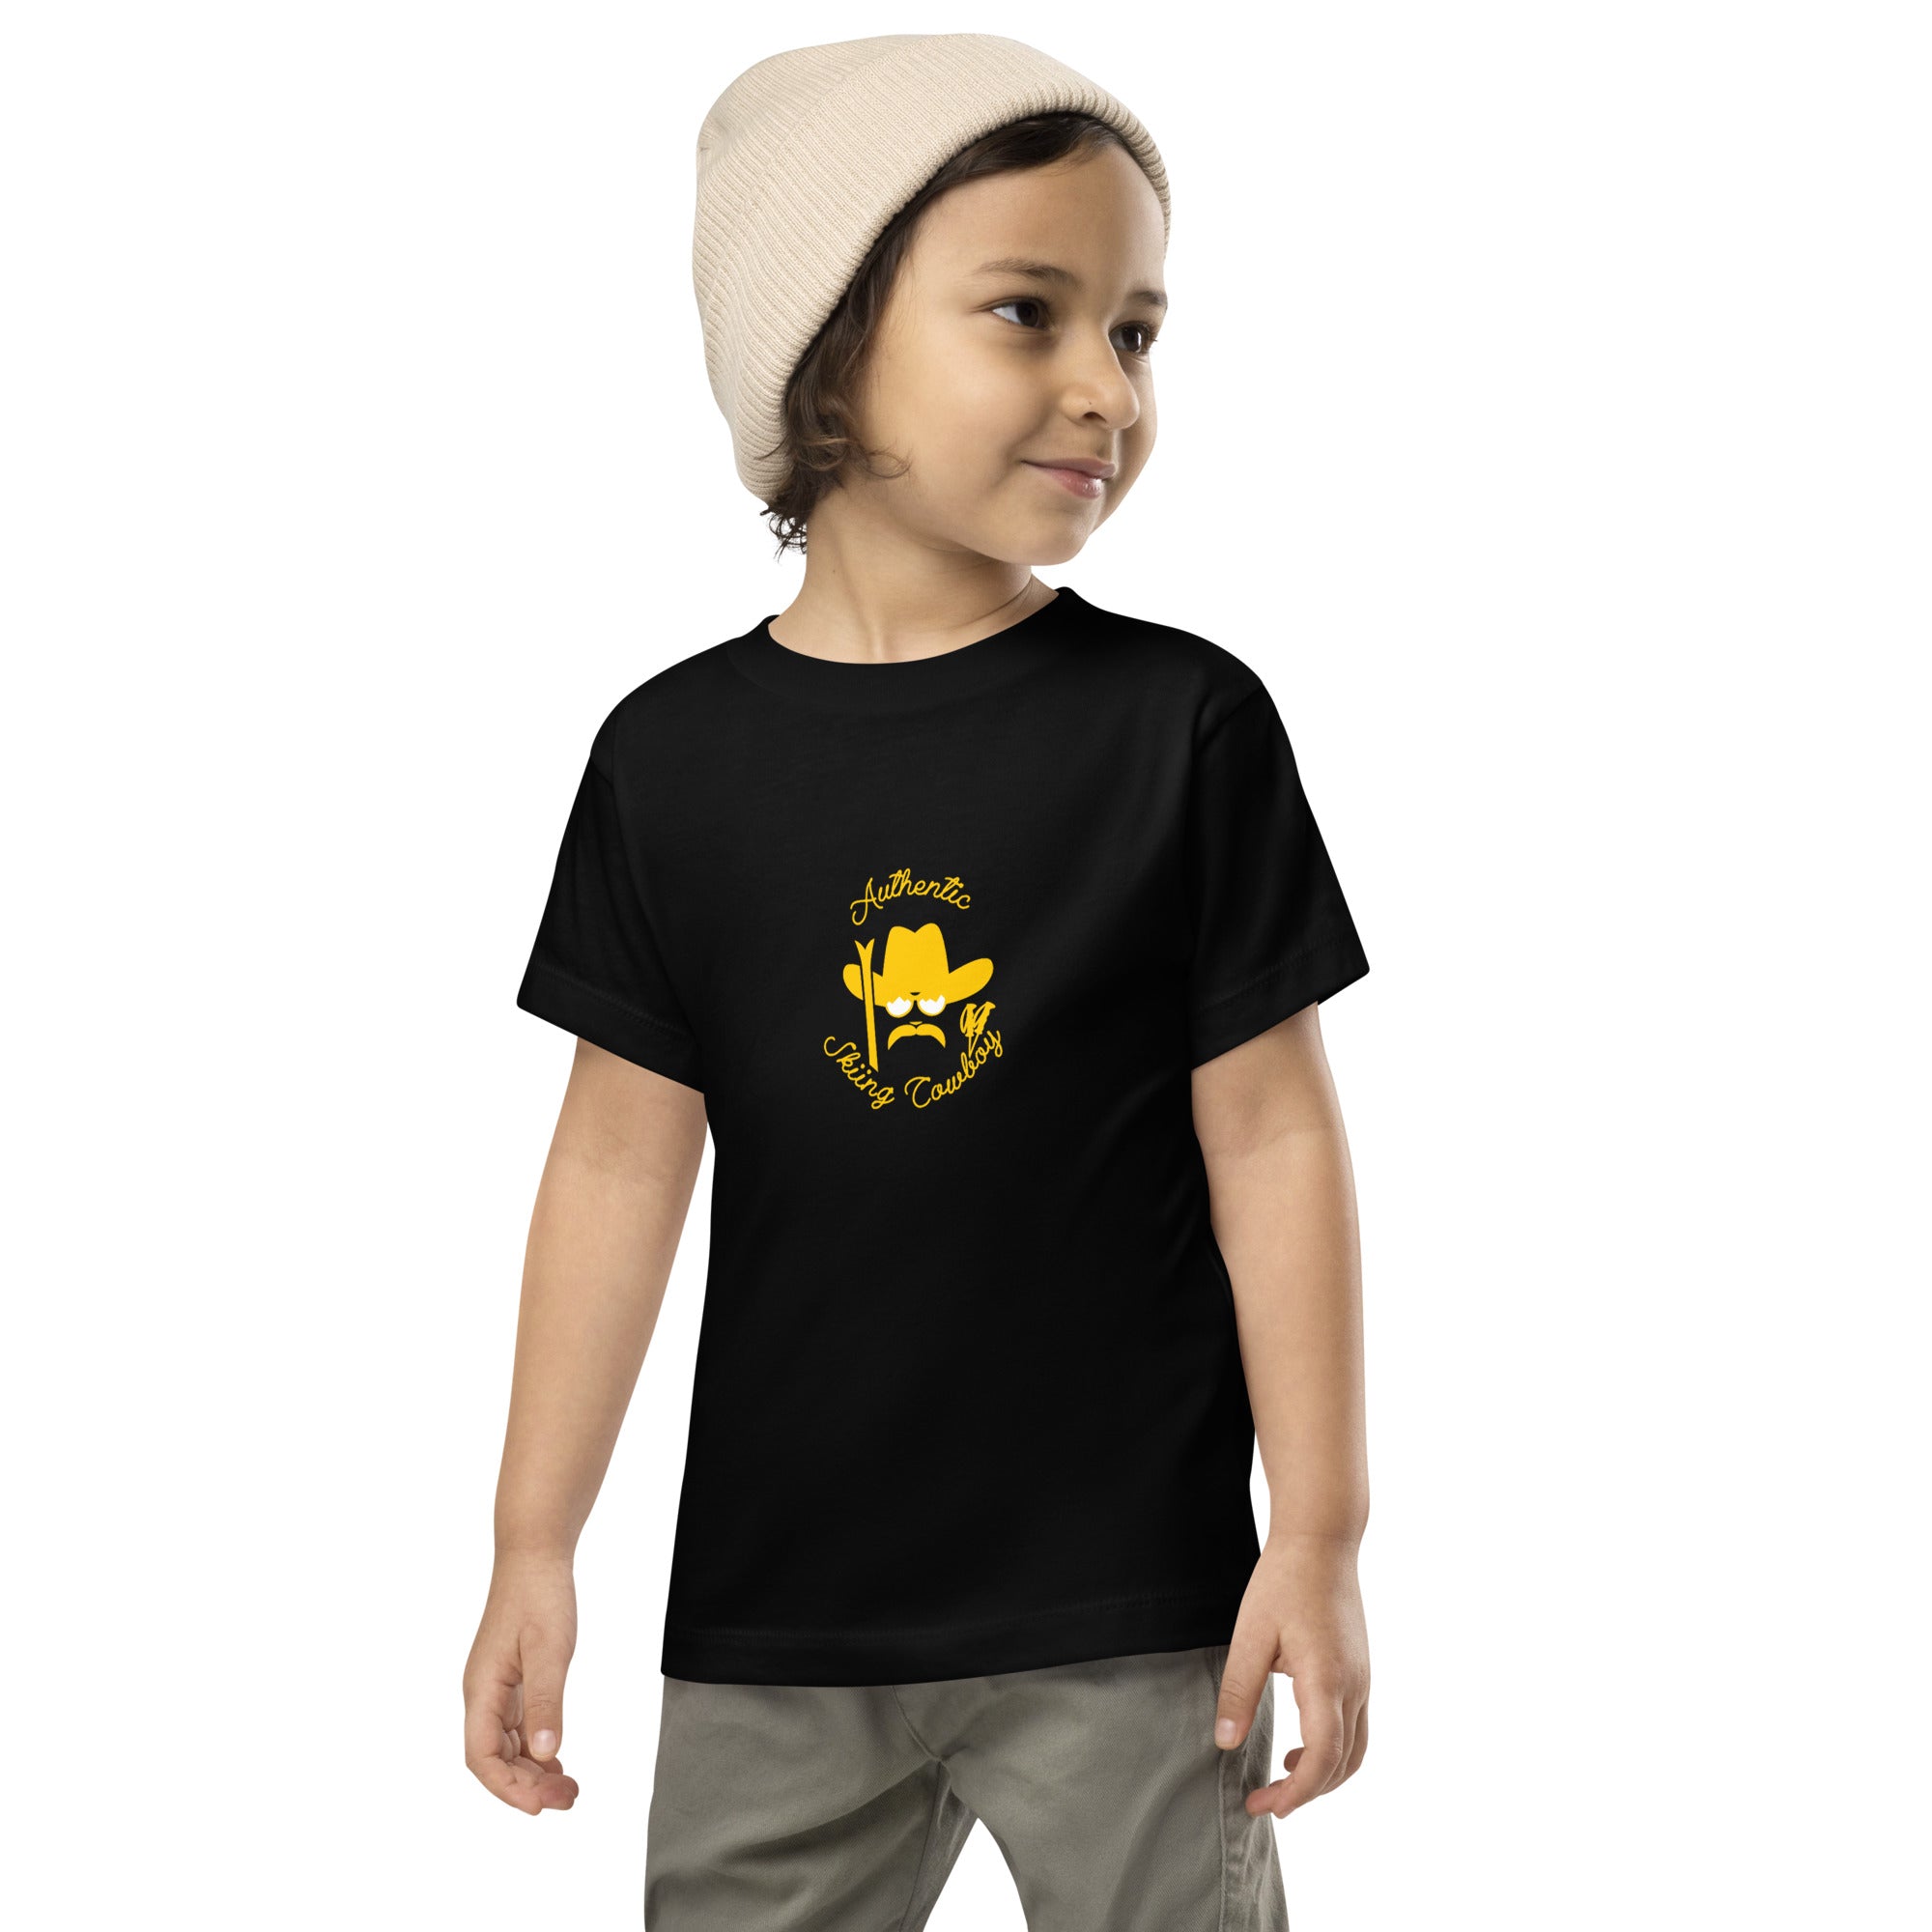 T-shirt pour enfant en bas âge Authentic Skiing Cowboy doré